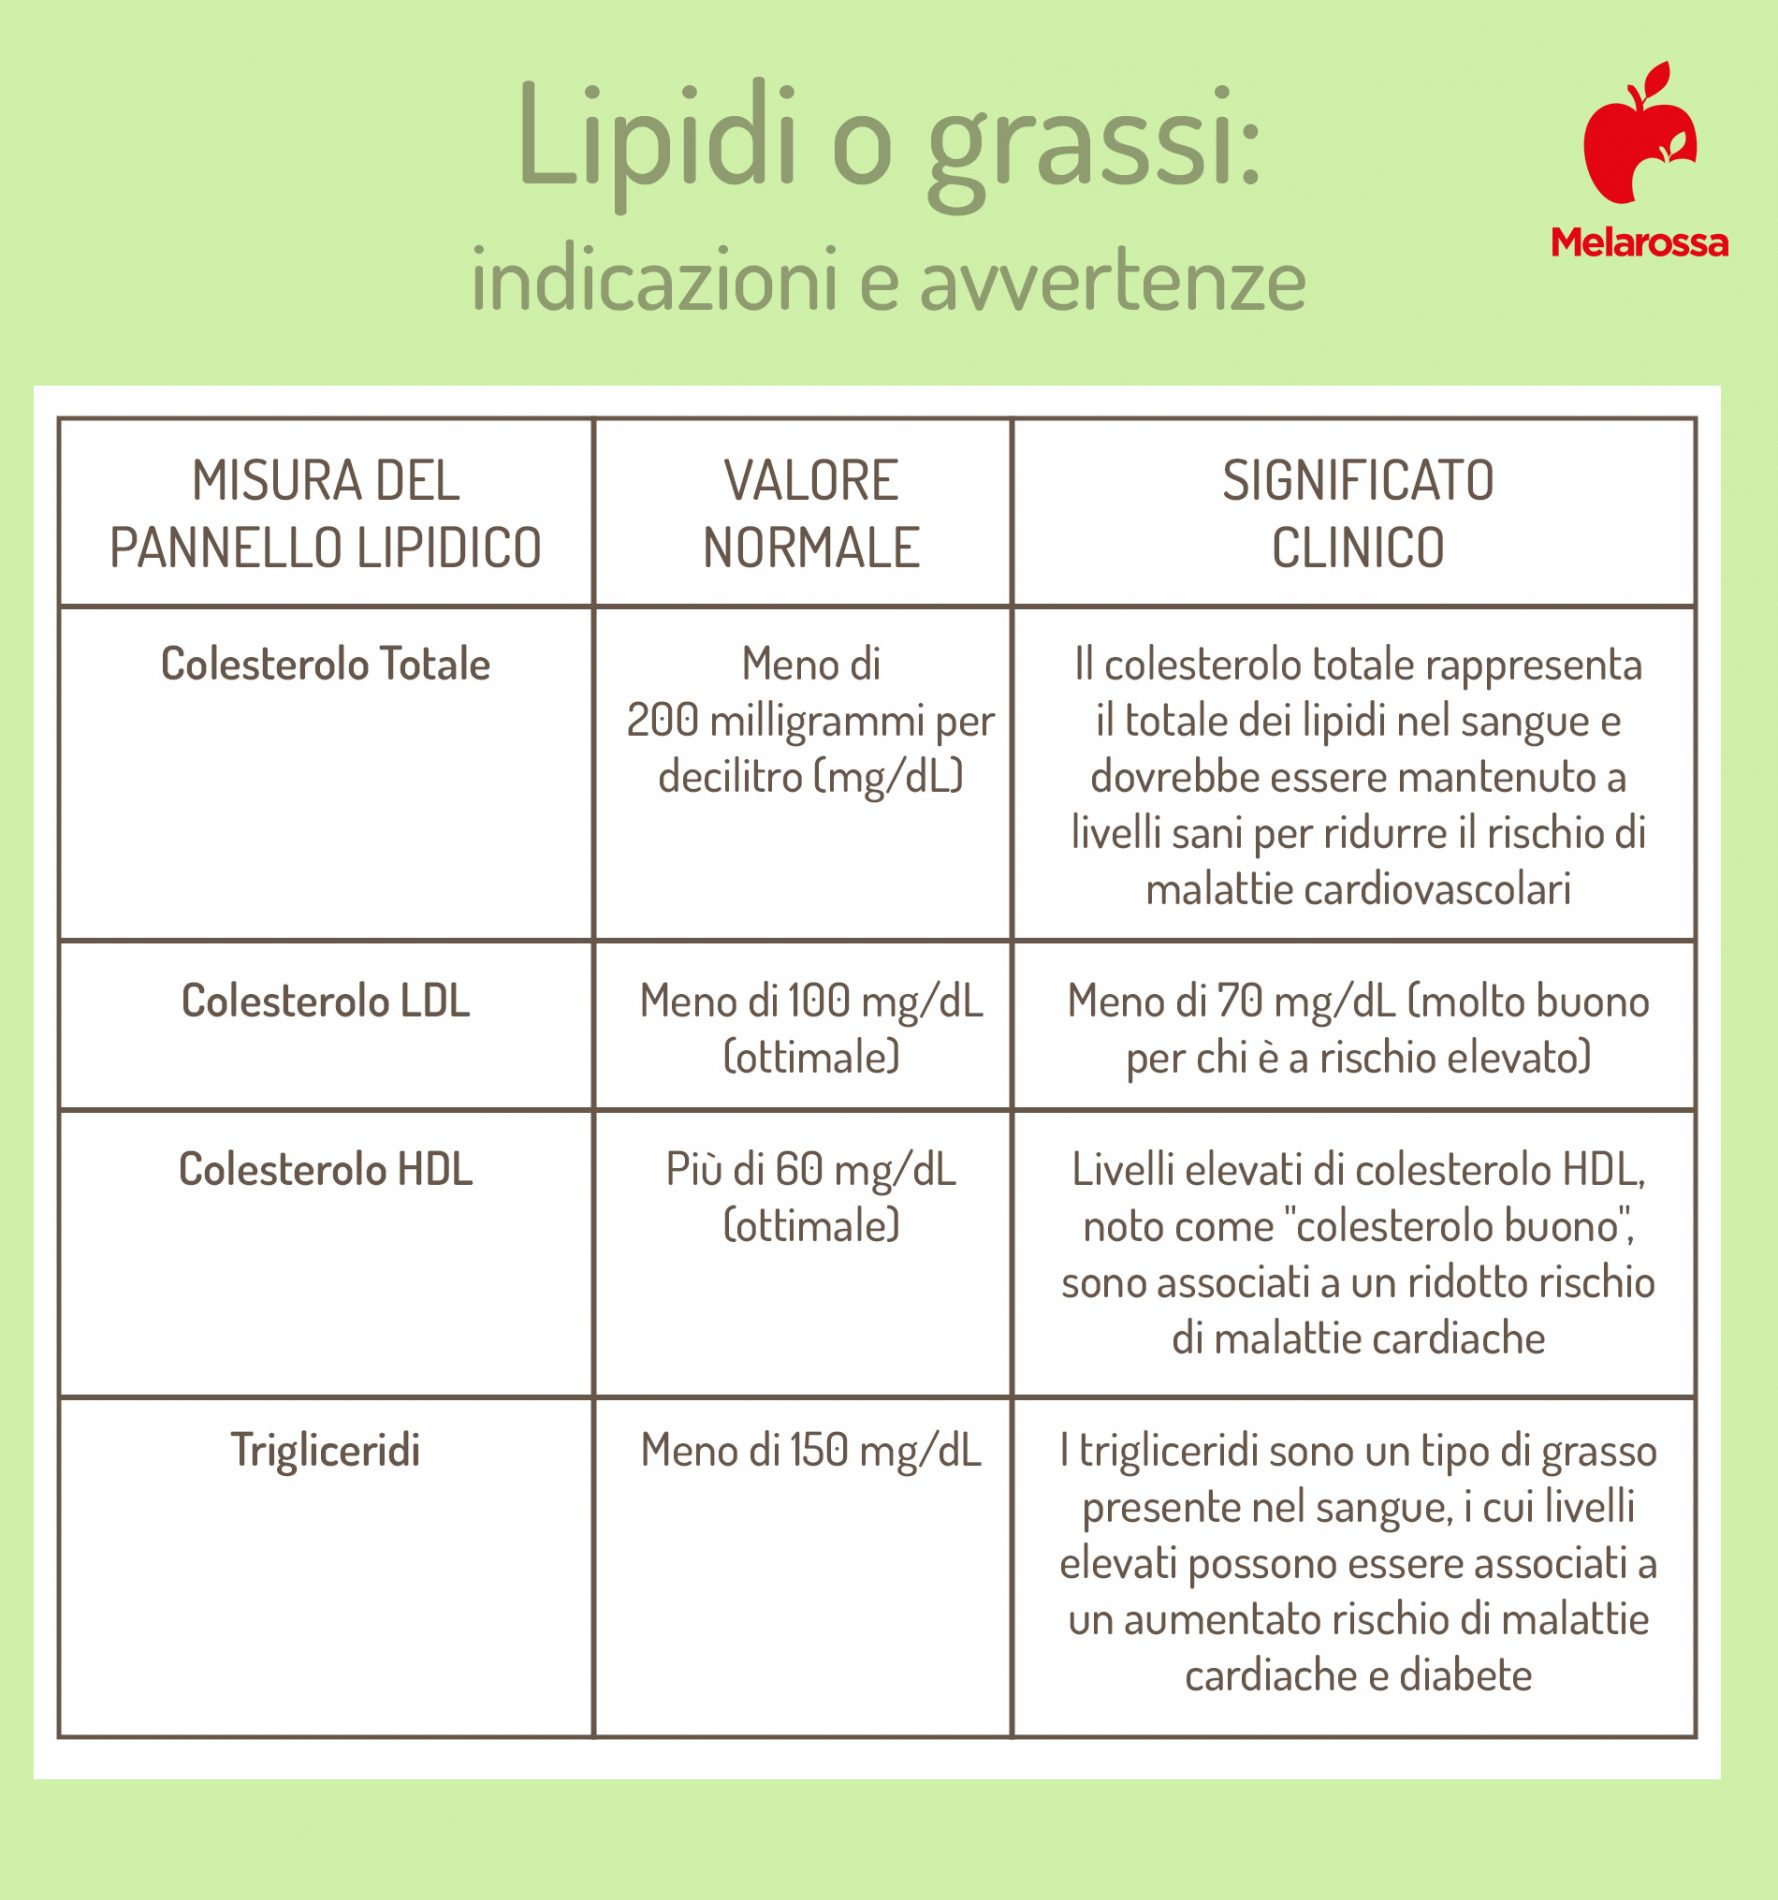 lipidi o grassi: indicazioni valori del colesterolo e trigliceridi